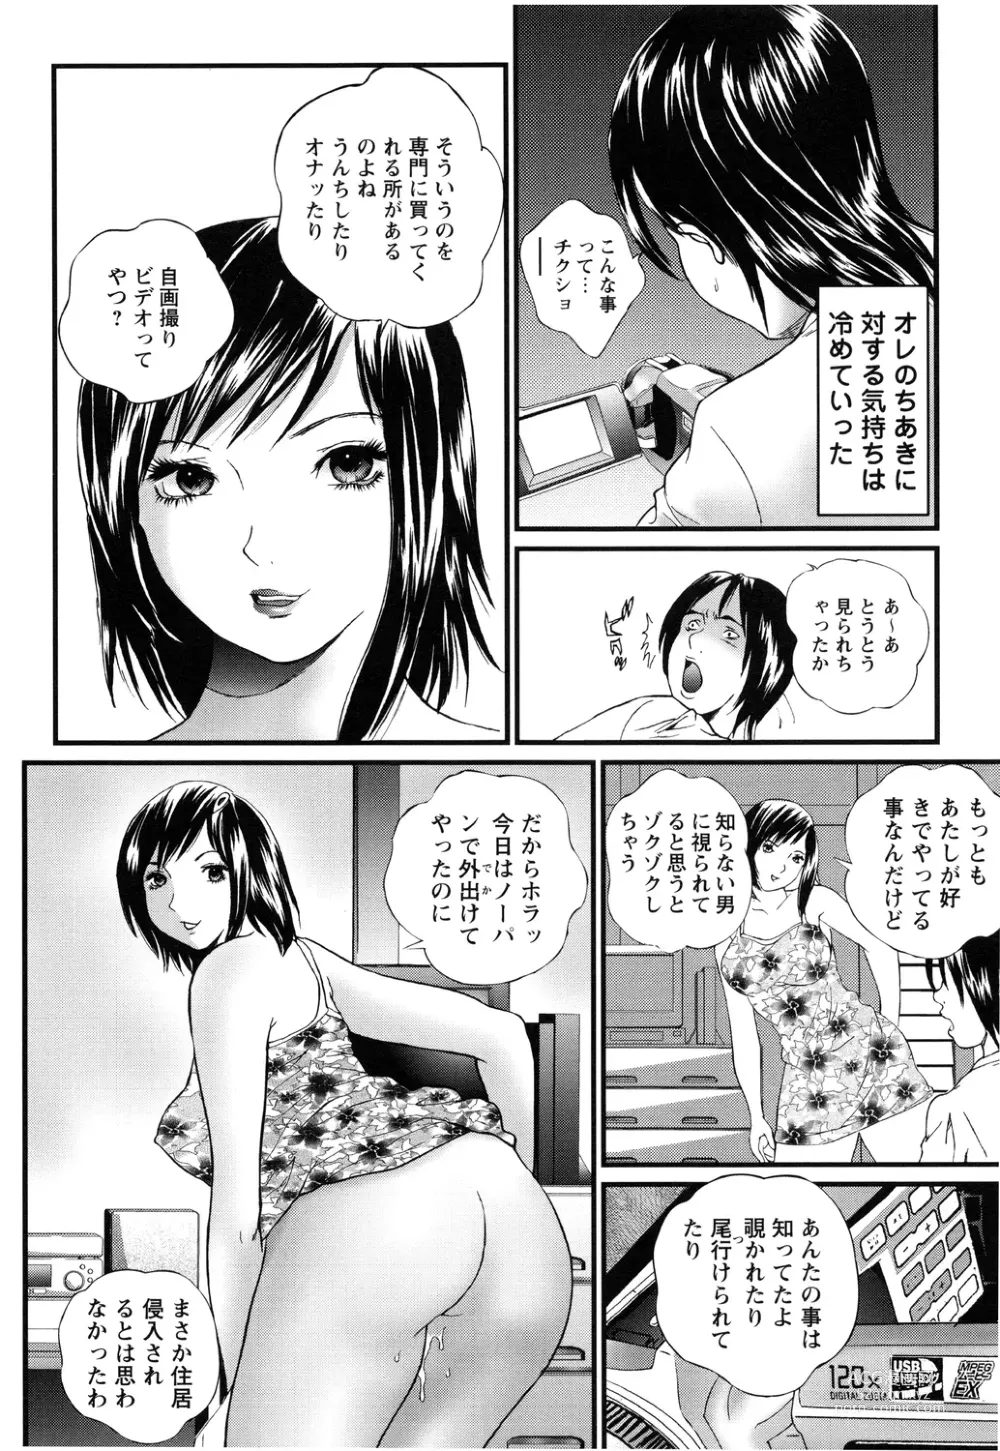 Page 162 of manga Apart zuma Ryouko